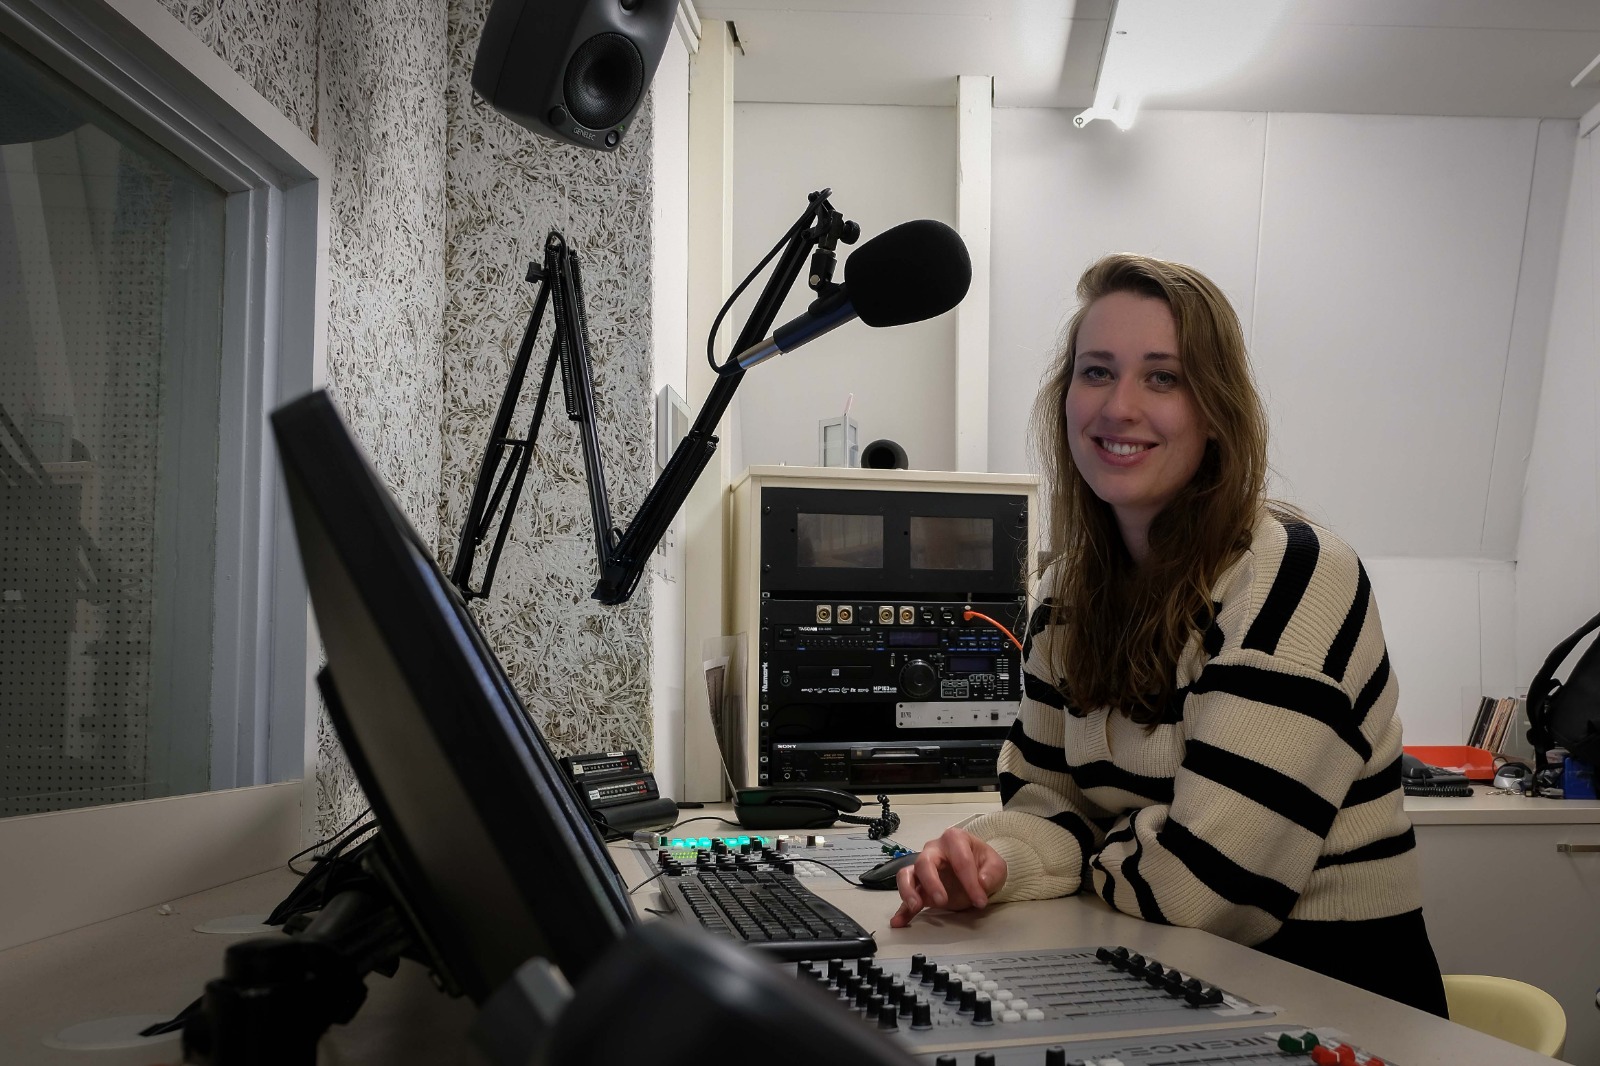 Wist je dat RTV Apeldoorn… meer dan 40 radioprogramma’s heeft?